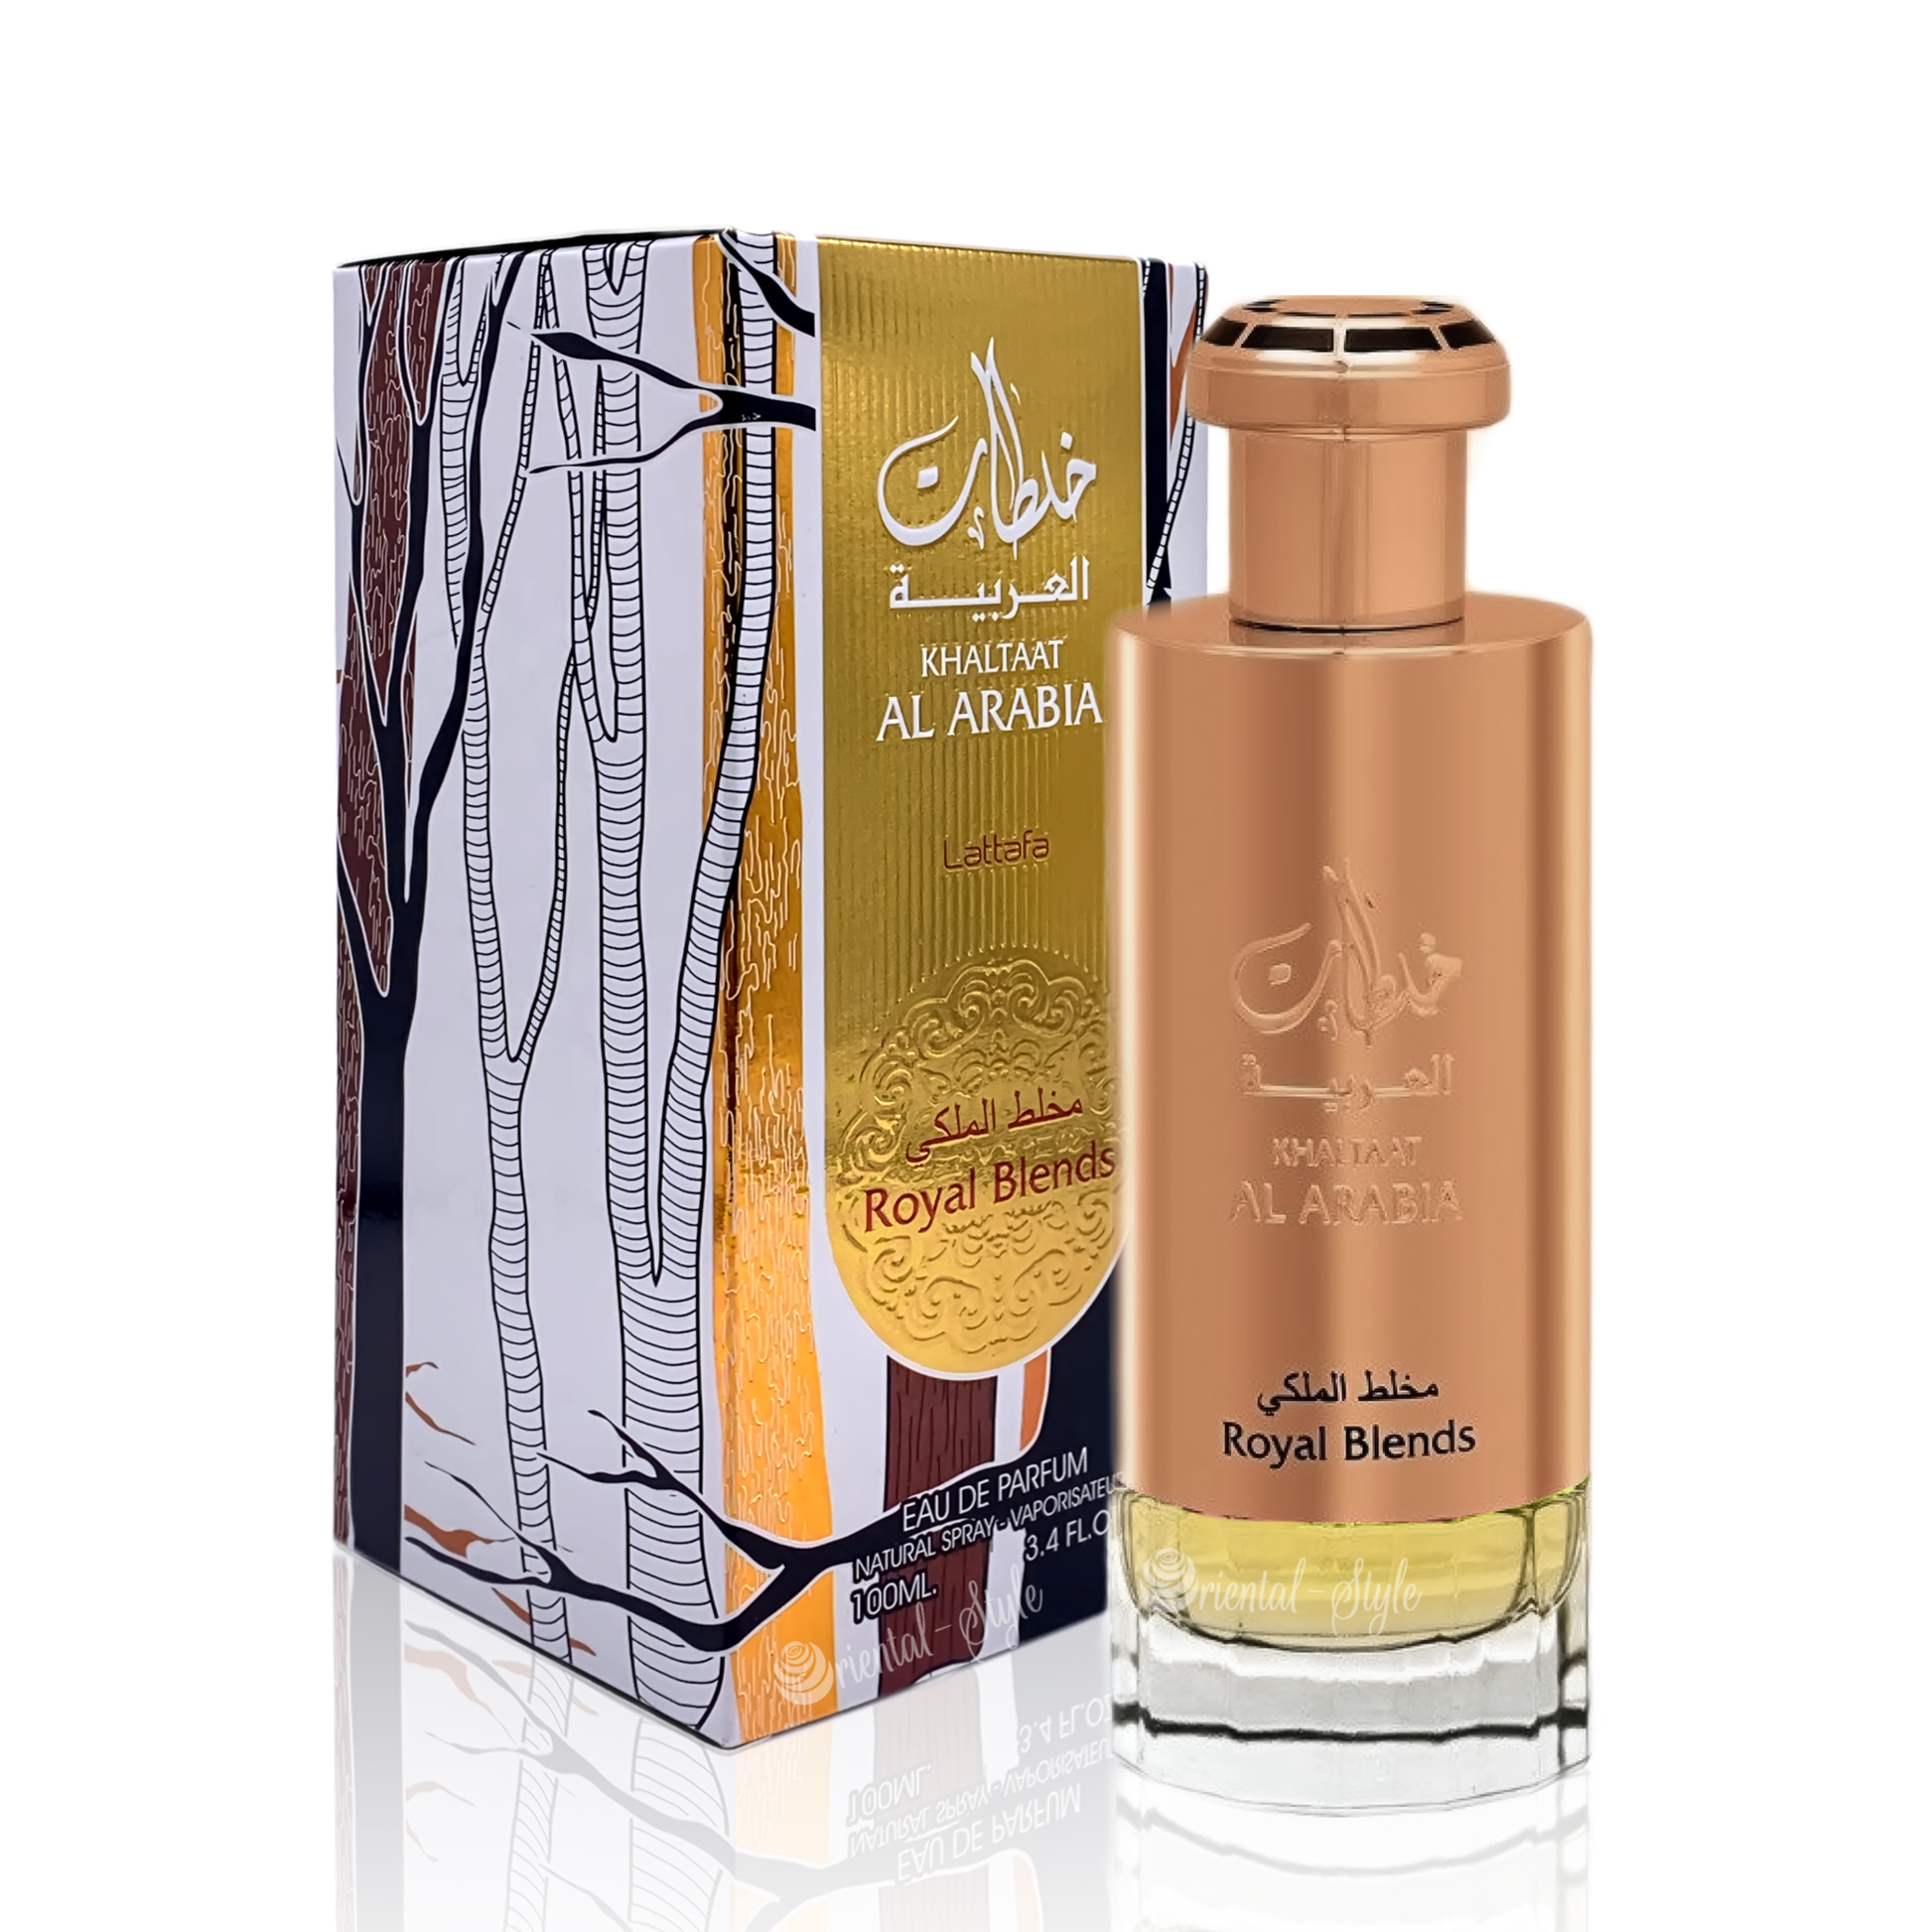 Khaltaat Al Arabia Royal Blends Gold Eau de Parfum unisex - Perfume Planet 